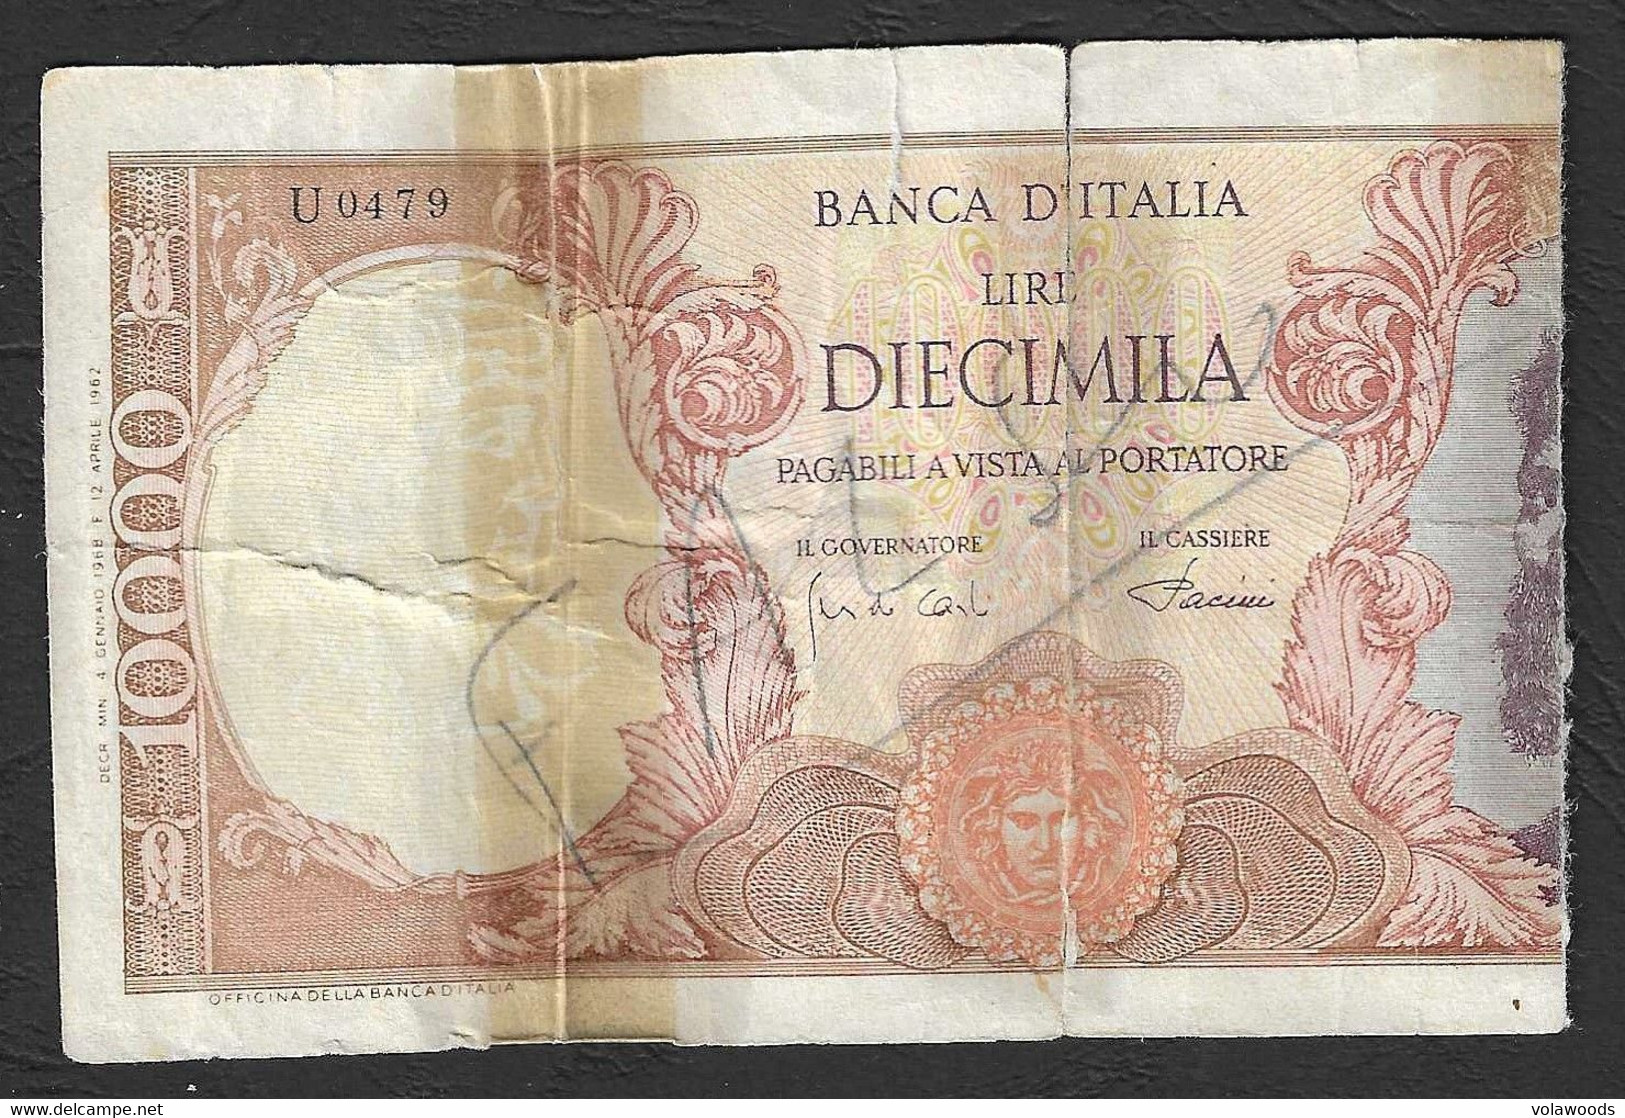 Italia - Banconota Circolata Da 10.000 Lire "Buonarroti" Falso D'epoca Circolato P-97d - 1968 - [ 8] Fakes & Specimens